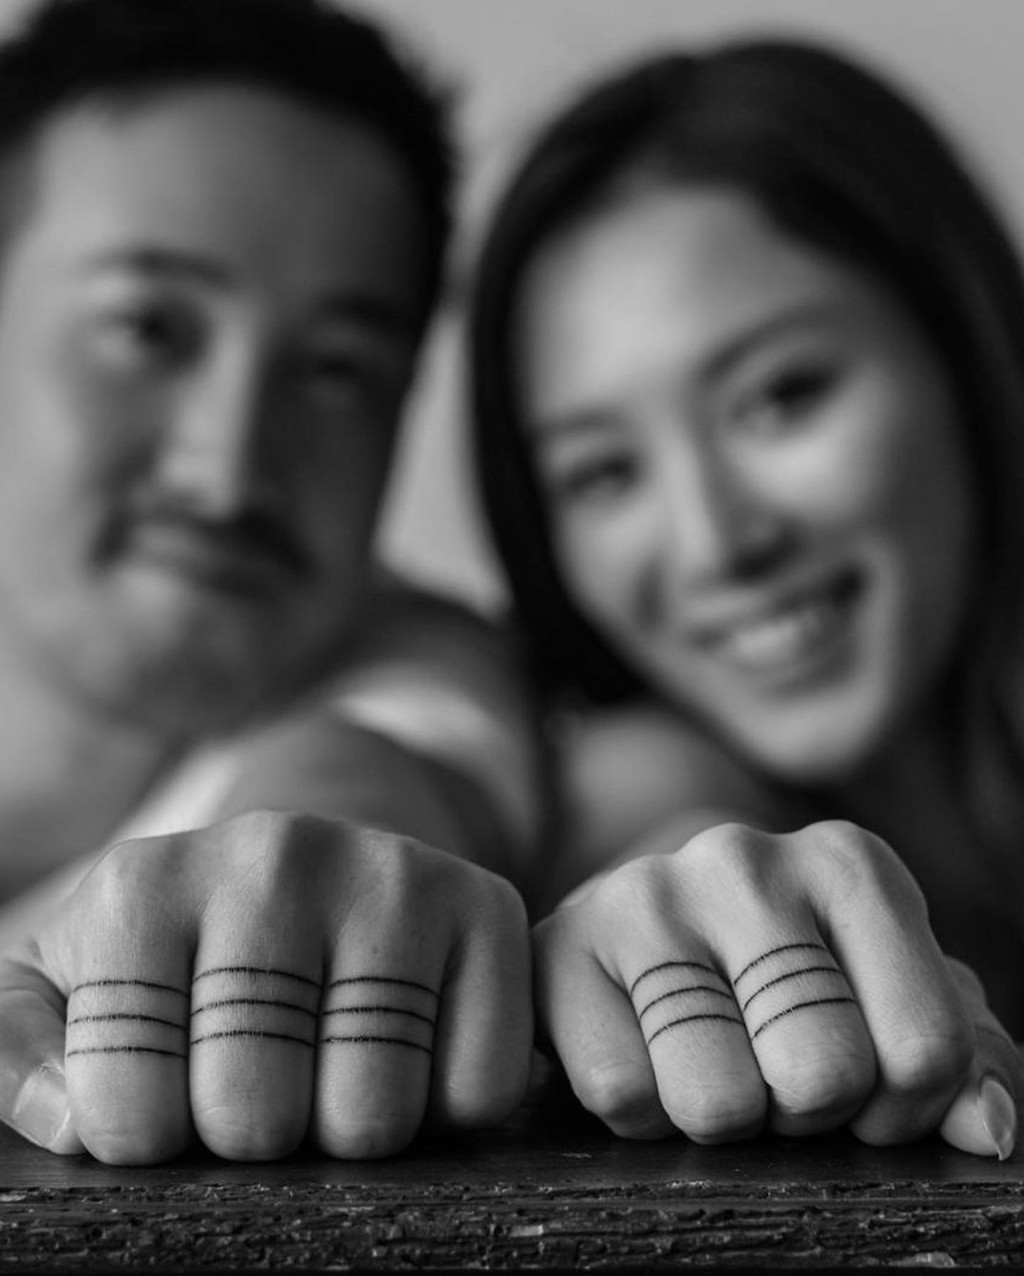 兩人使用「戒指紋身」代替「正常」戒指，曾國祥在3隻手指紋上共9個圈，王敏奕則在兩隻手指紋上共6圈，代表兩人的結婚日期9月6日。